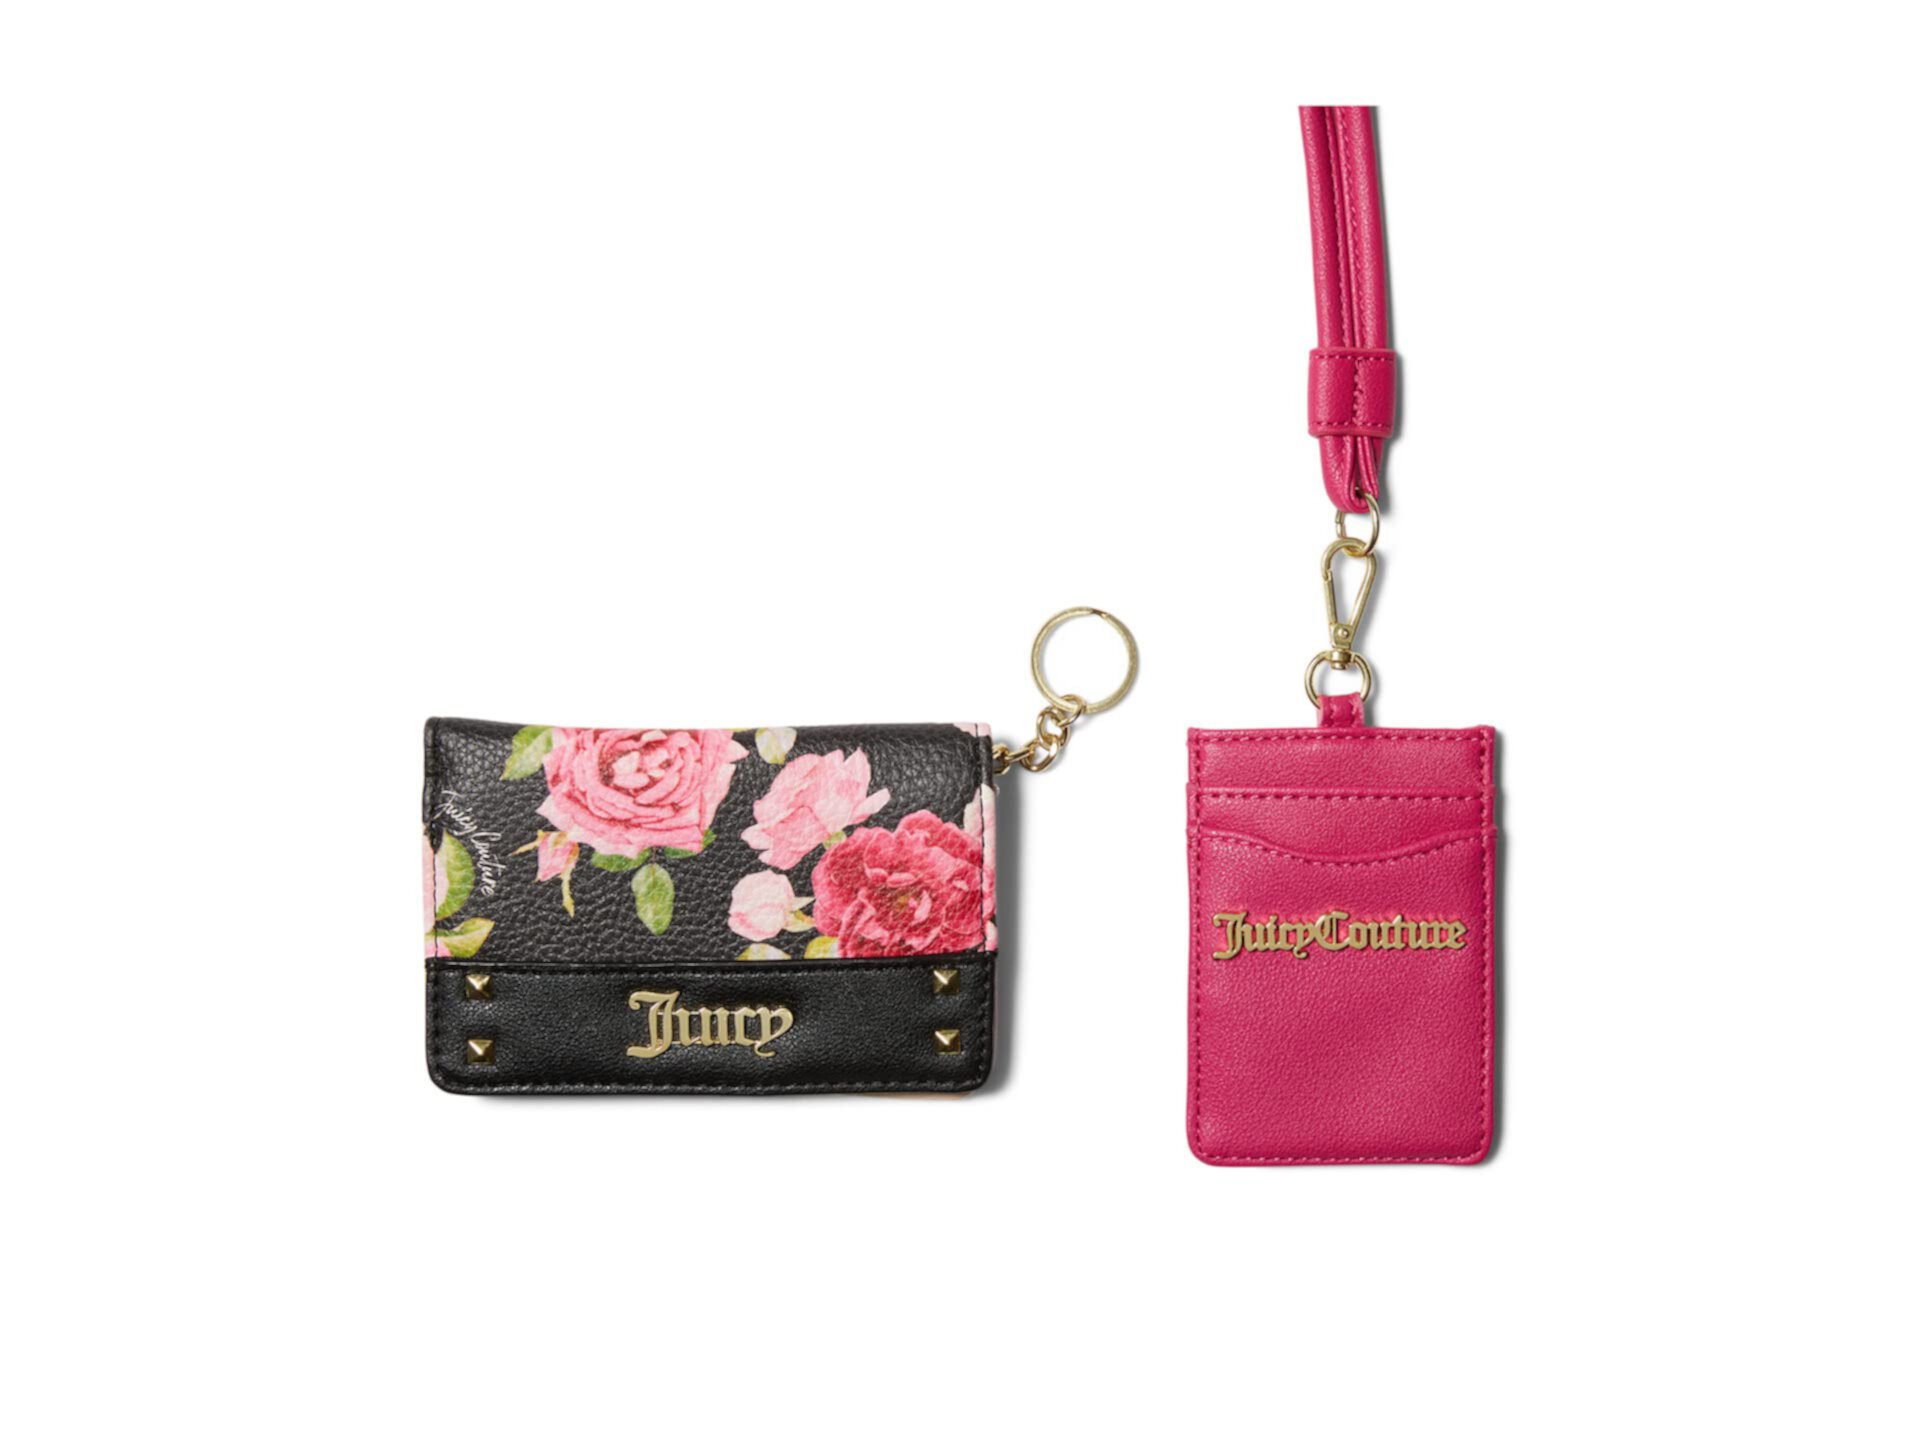 Подарочный набор со складной кредитной картой и ремешком Juicy Couture